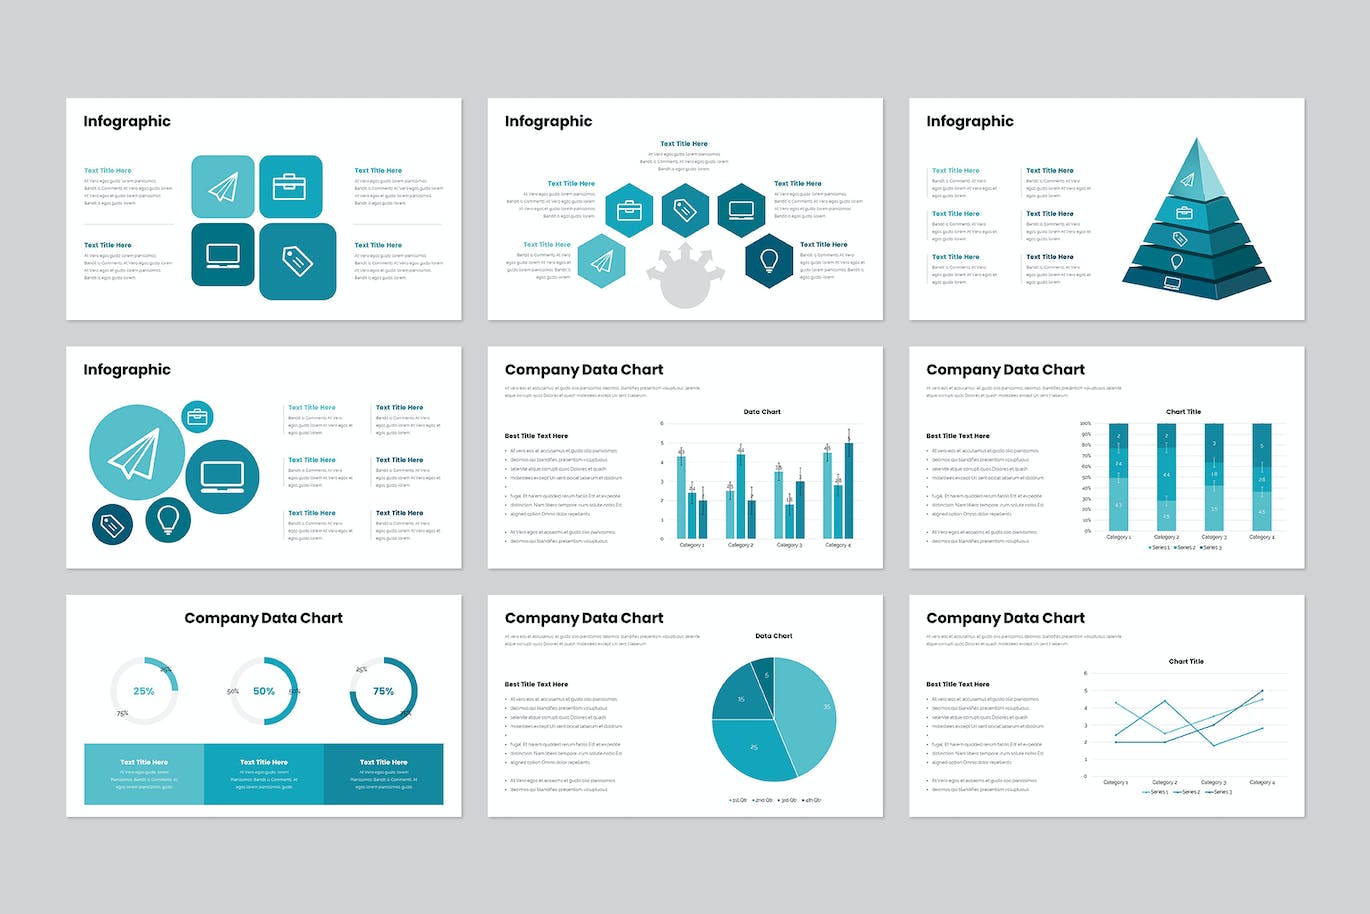 企业计划方案PPT演示幻灯片模板 Business Plan PowerPoint Template 幻灯图表 第12张